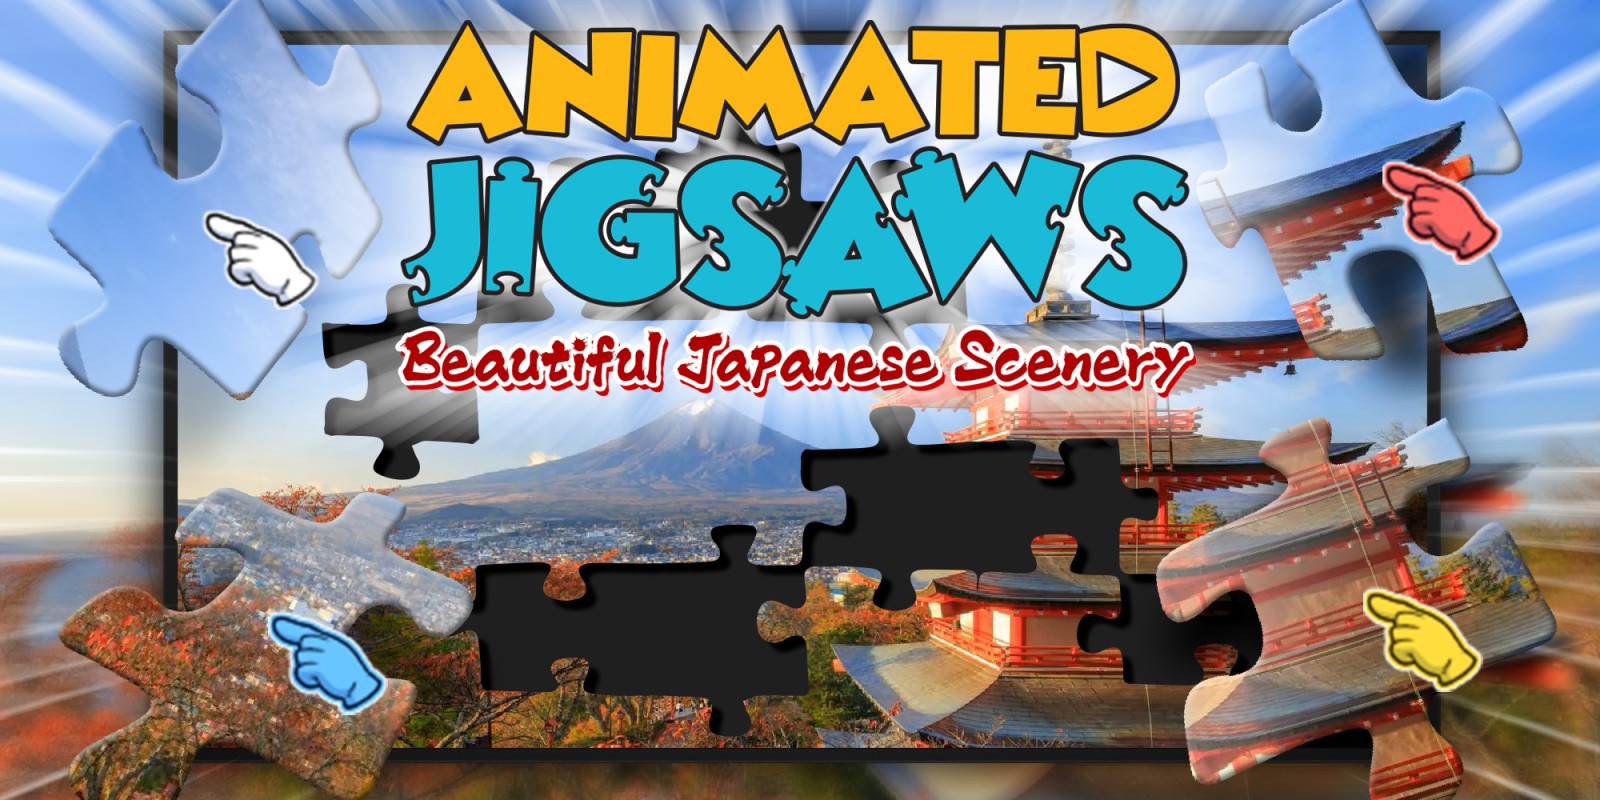 Animated Jigsaw Image 1